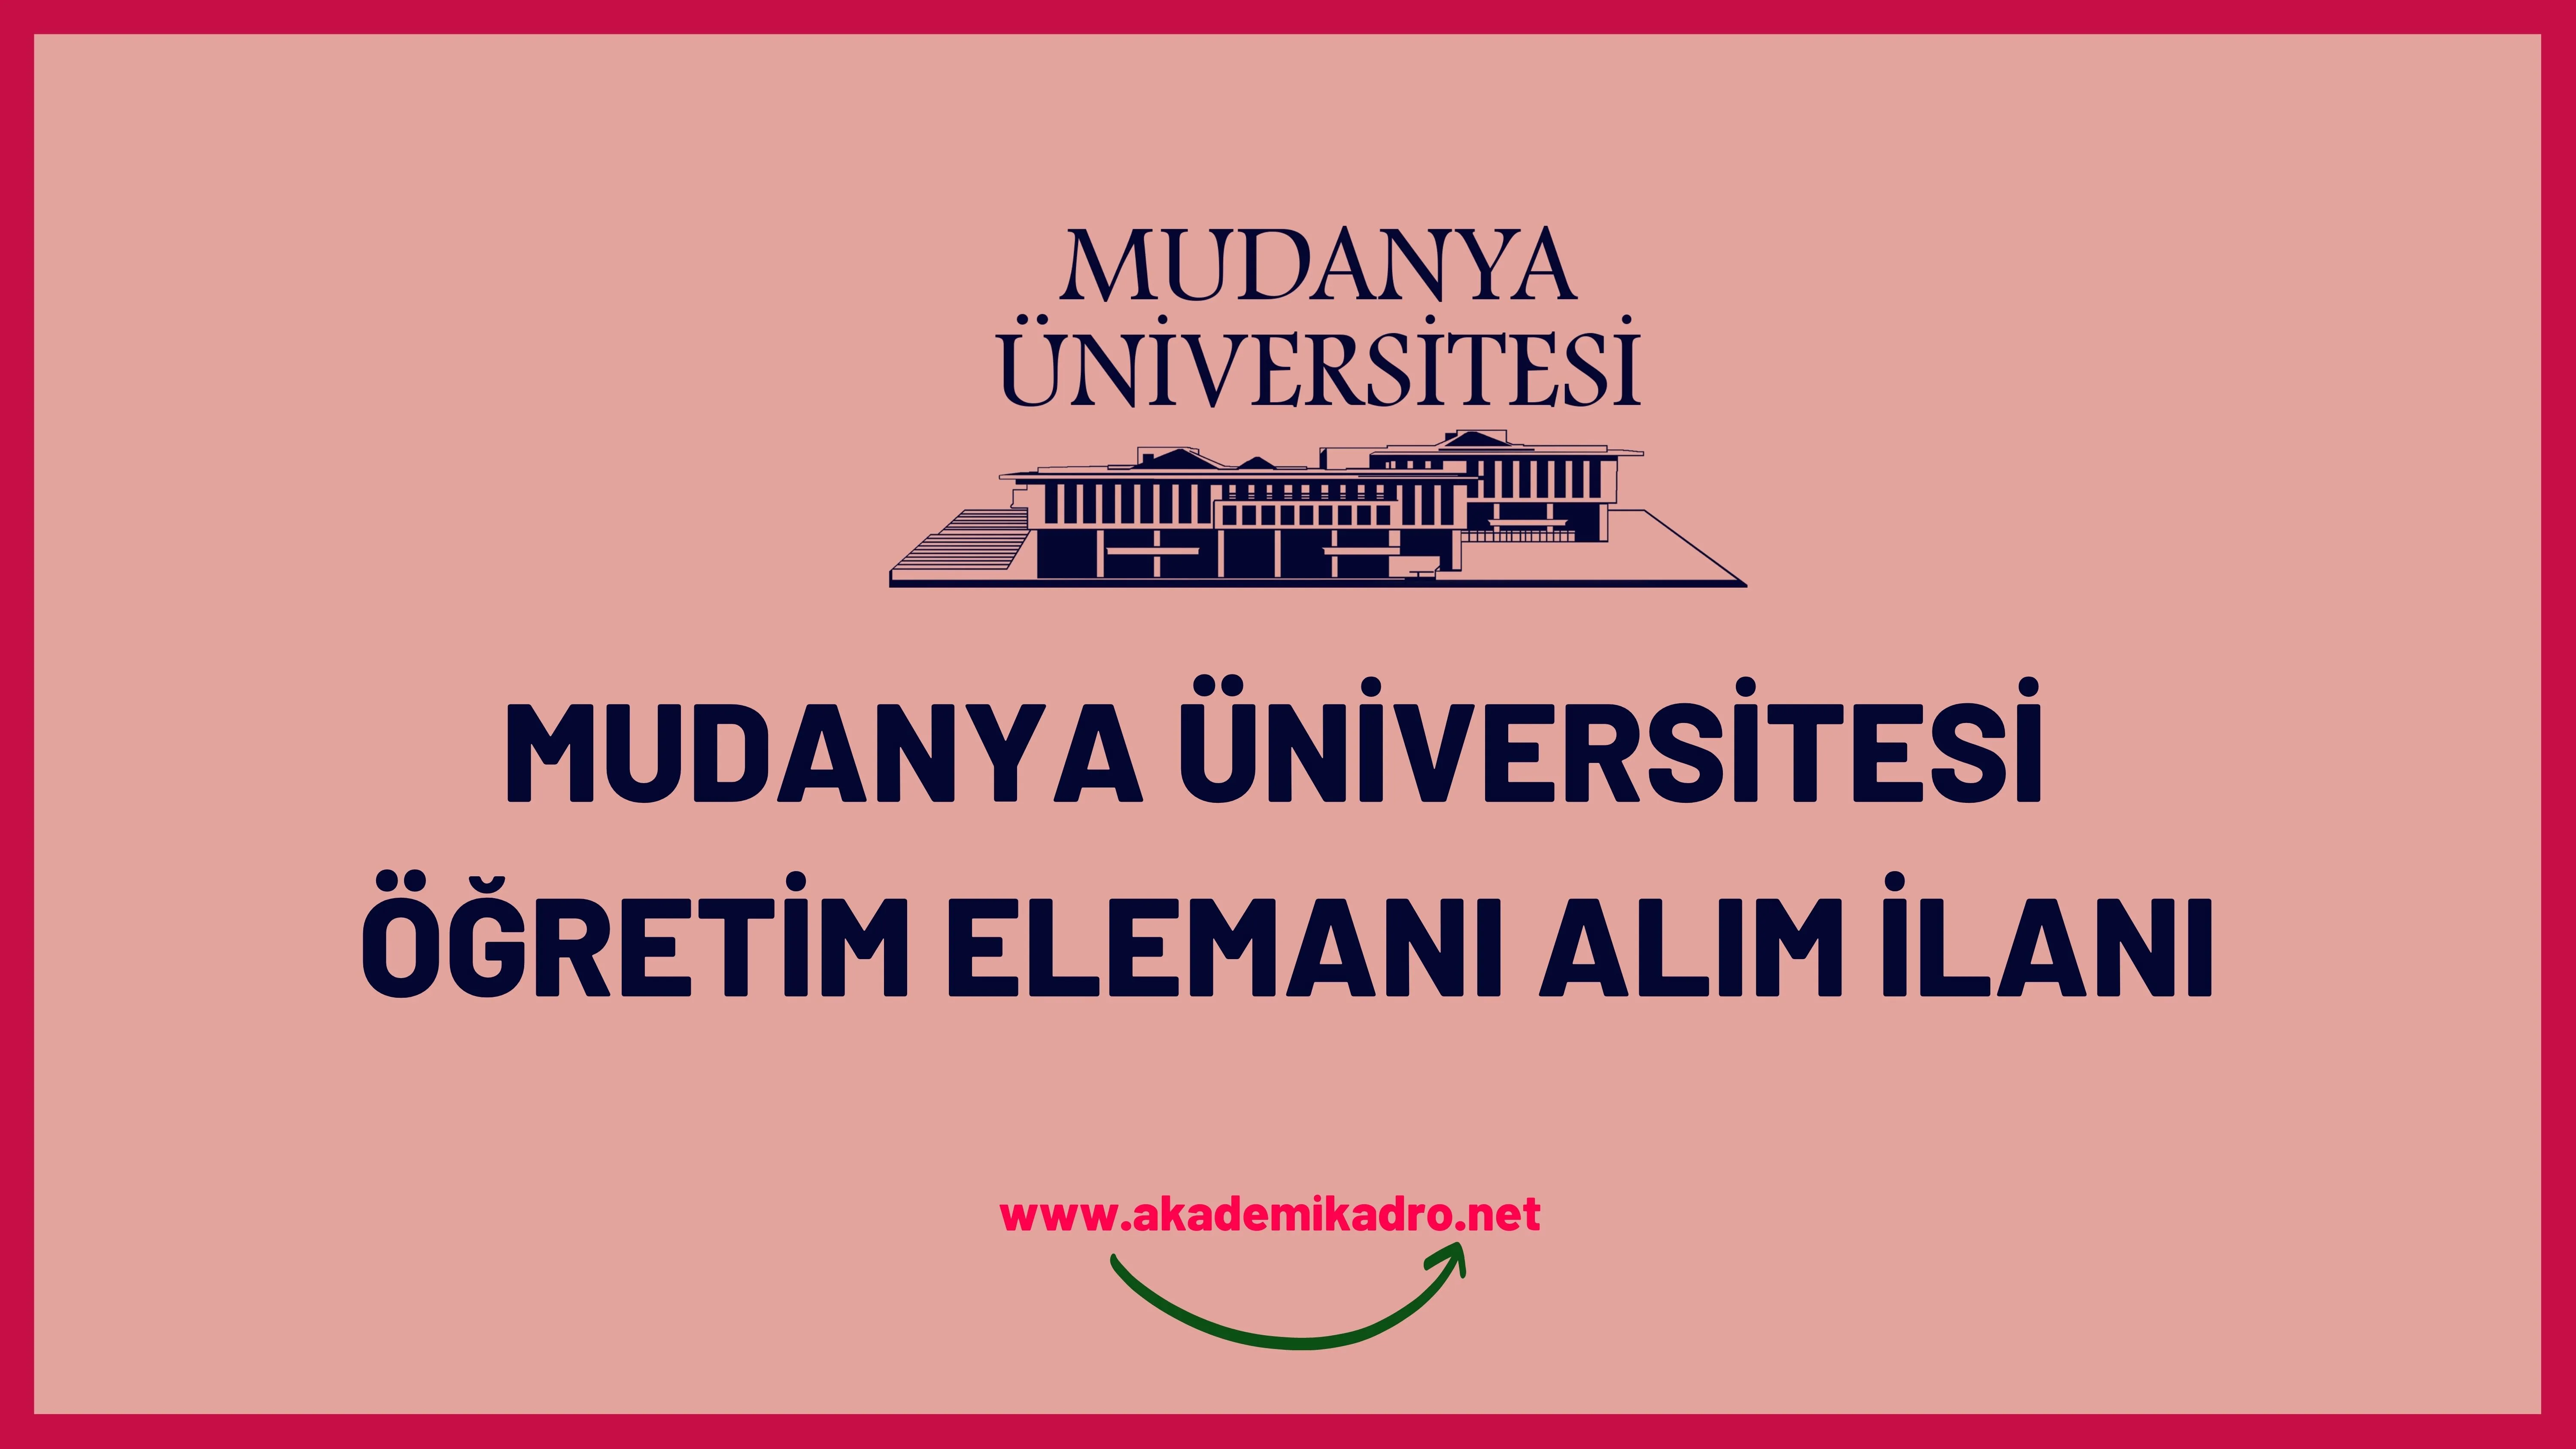 Mudanya Üniversitesi 10 Araştırma görevlisi, 22 Öğretim görevlisi ve 39 Öğretim üyesi alacak.